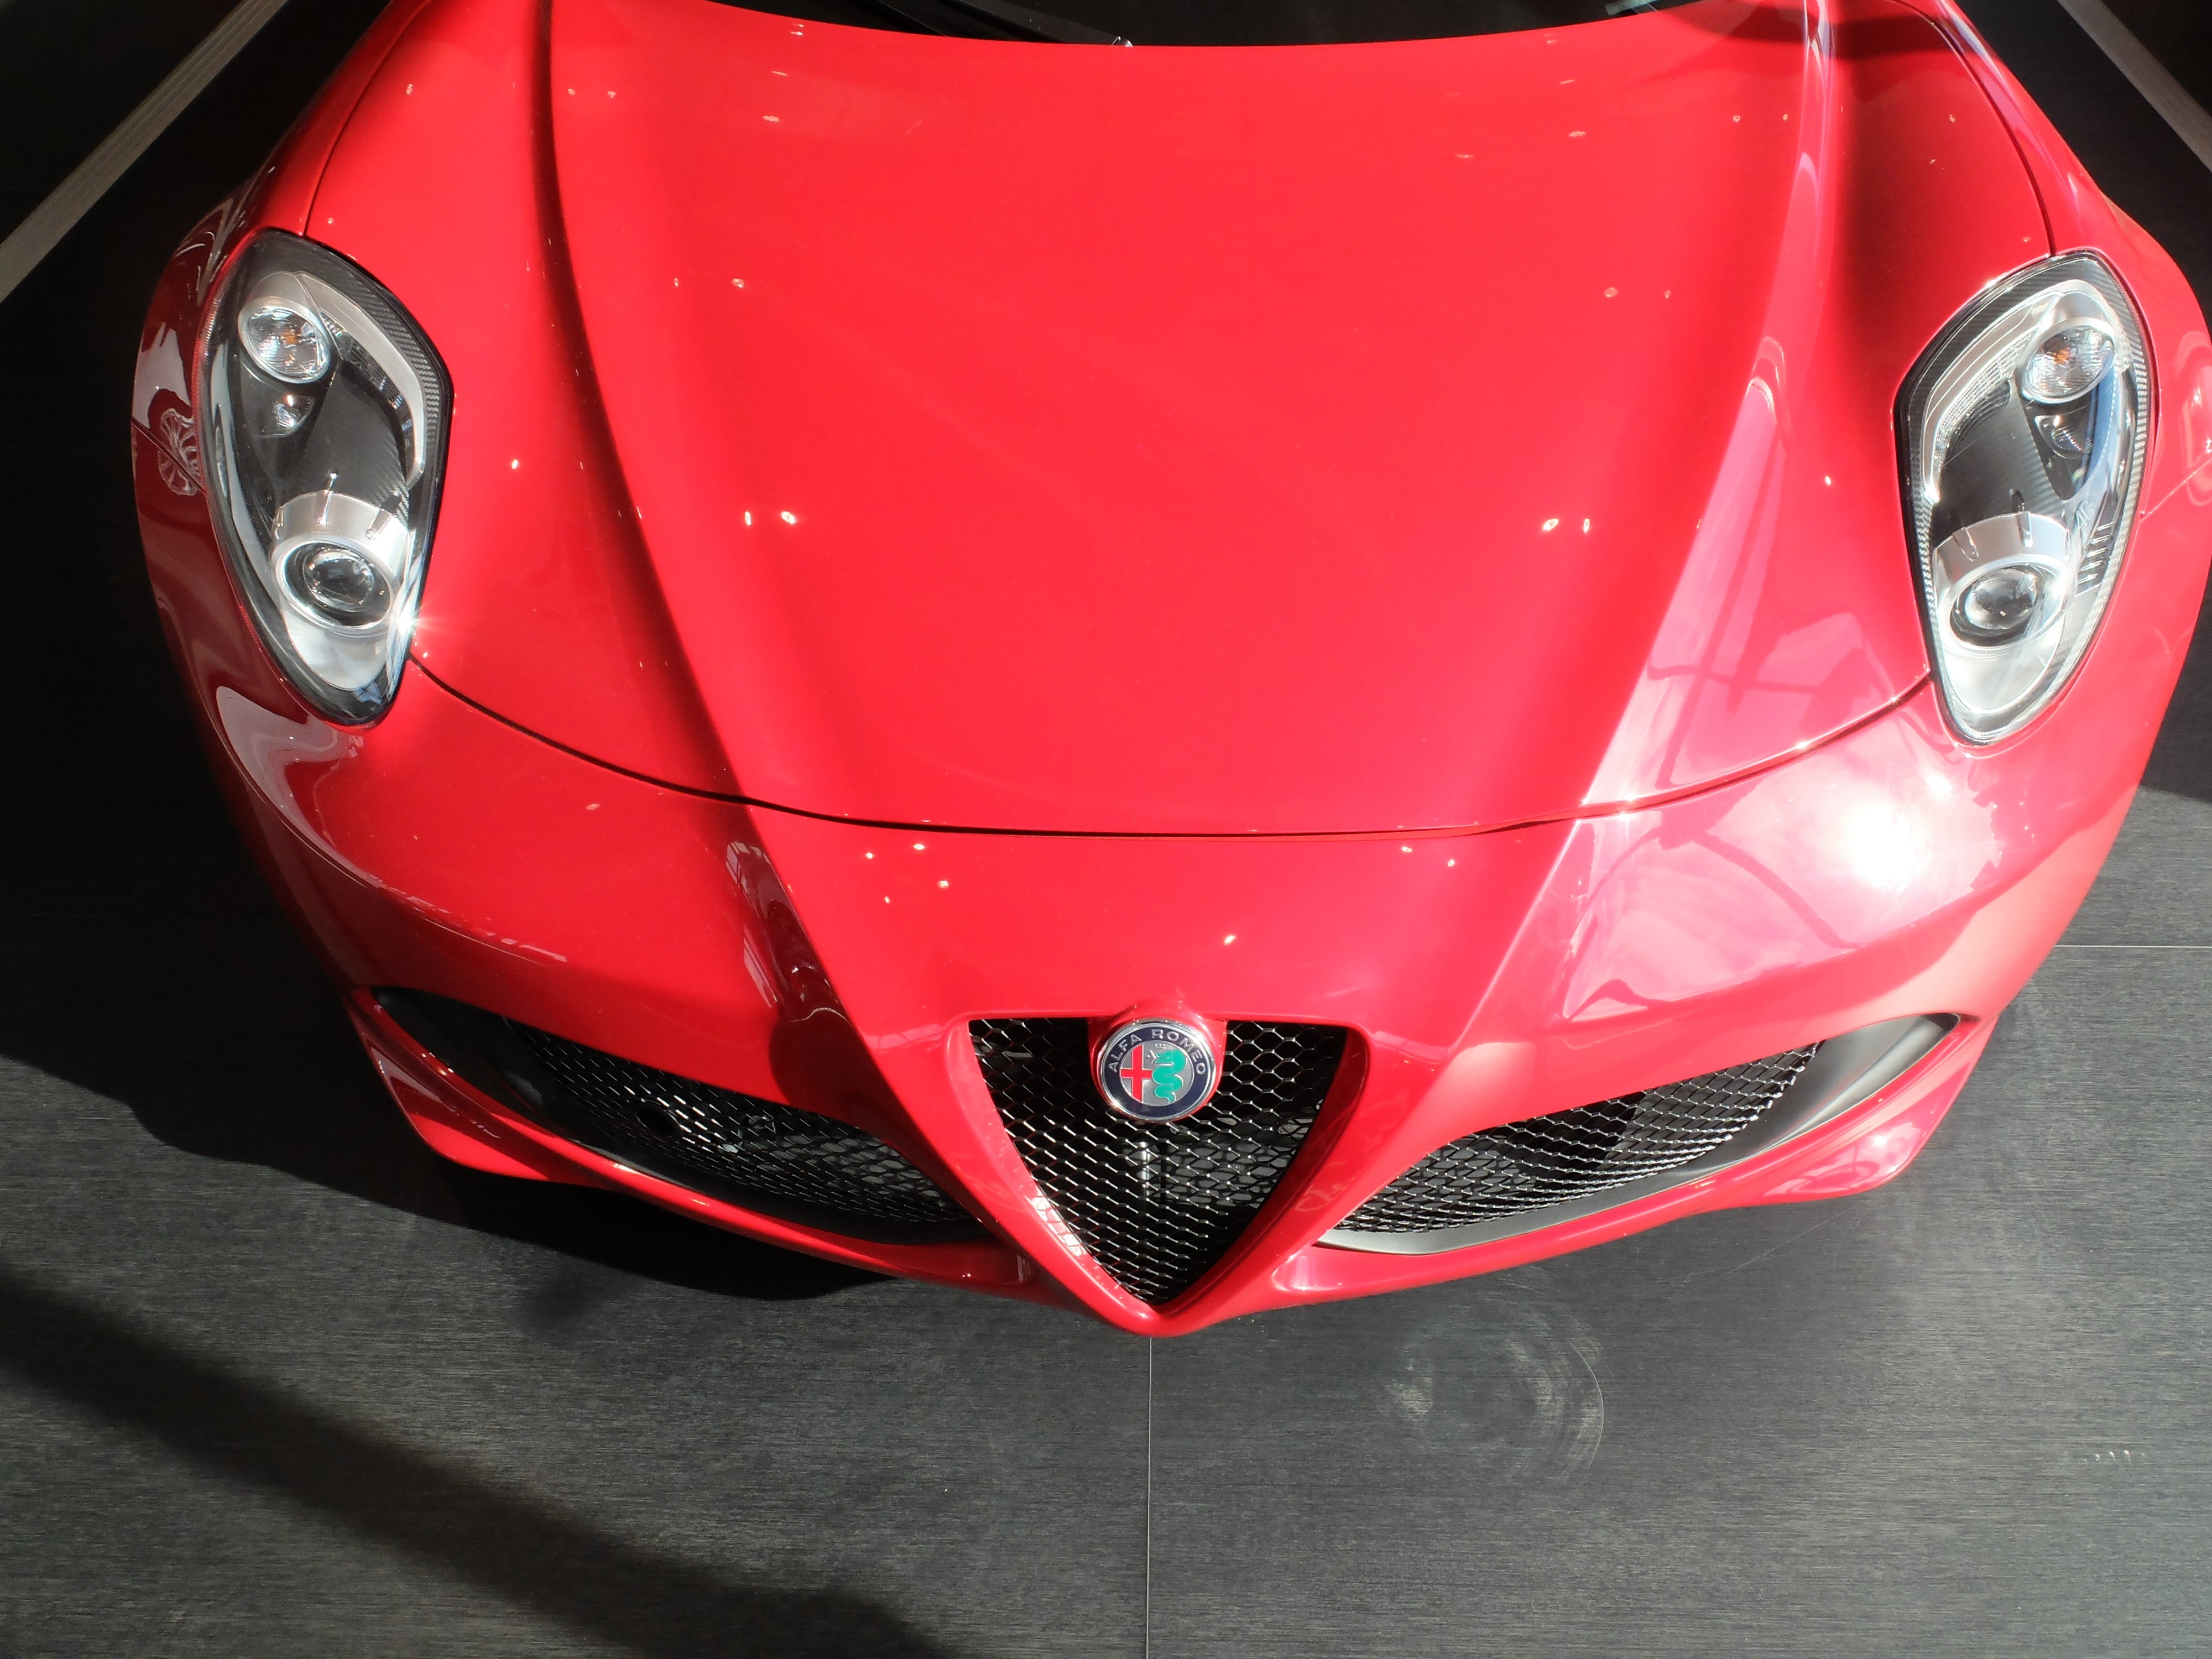 ITALIAN AUTO PARTS Ricambi nuovi e originali per tutta la gamma automobili  Alfa Romeo , lancia , fiat , abarth